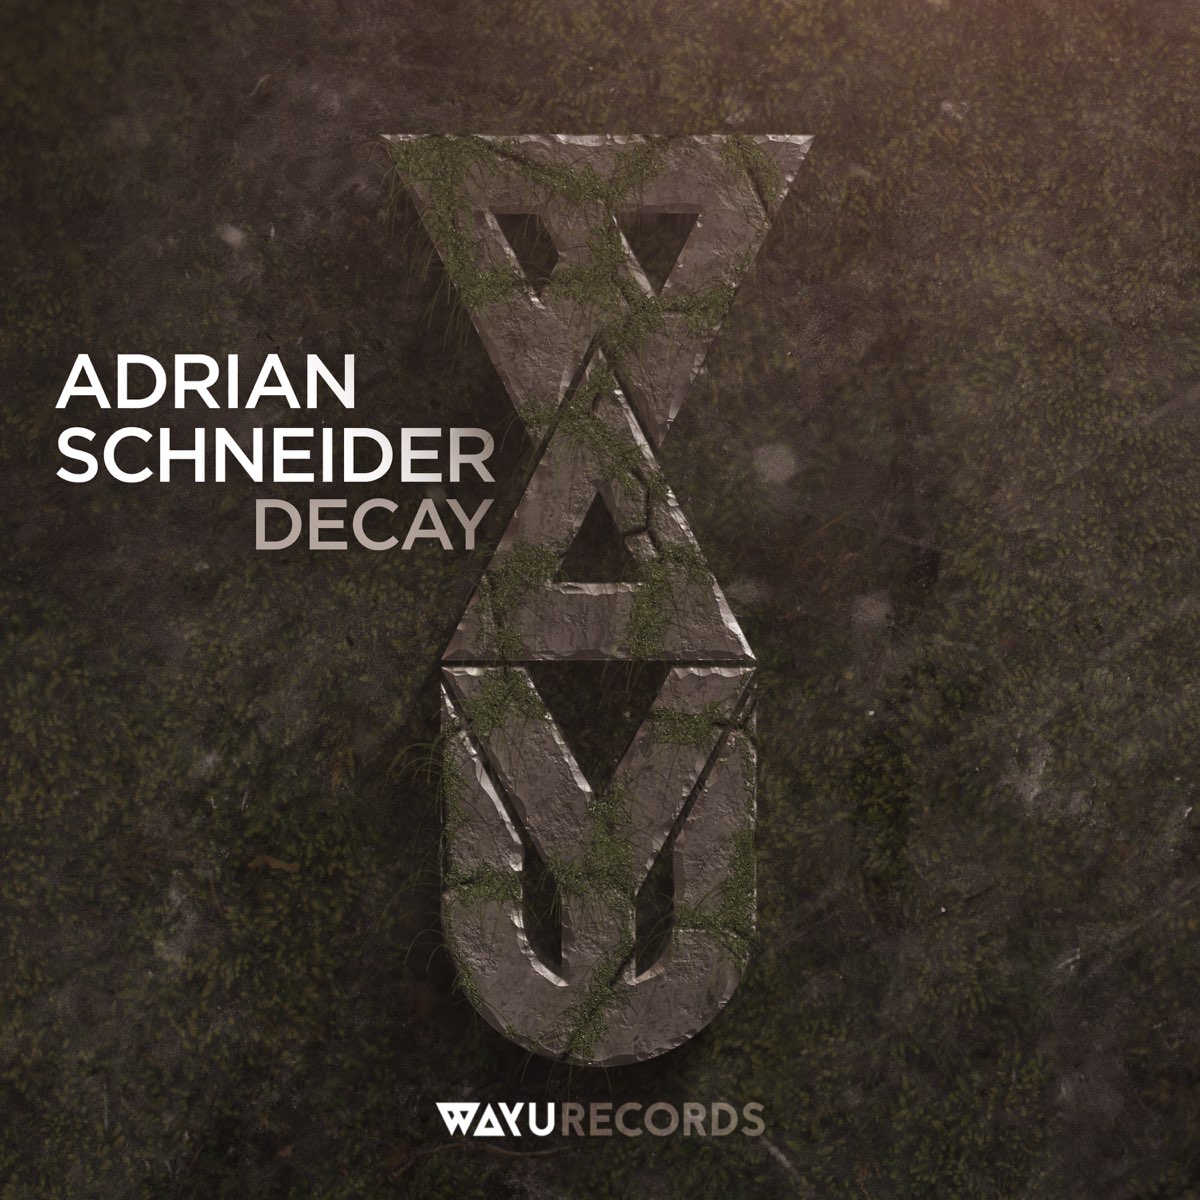 ‎Decay – Album von Adrian Schneider – Apple Music